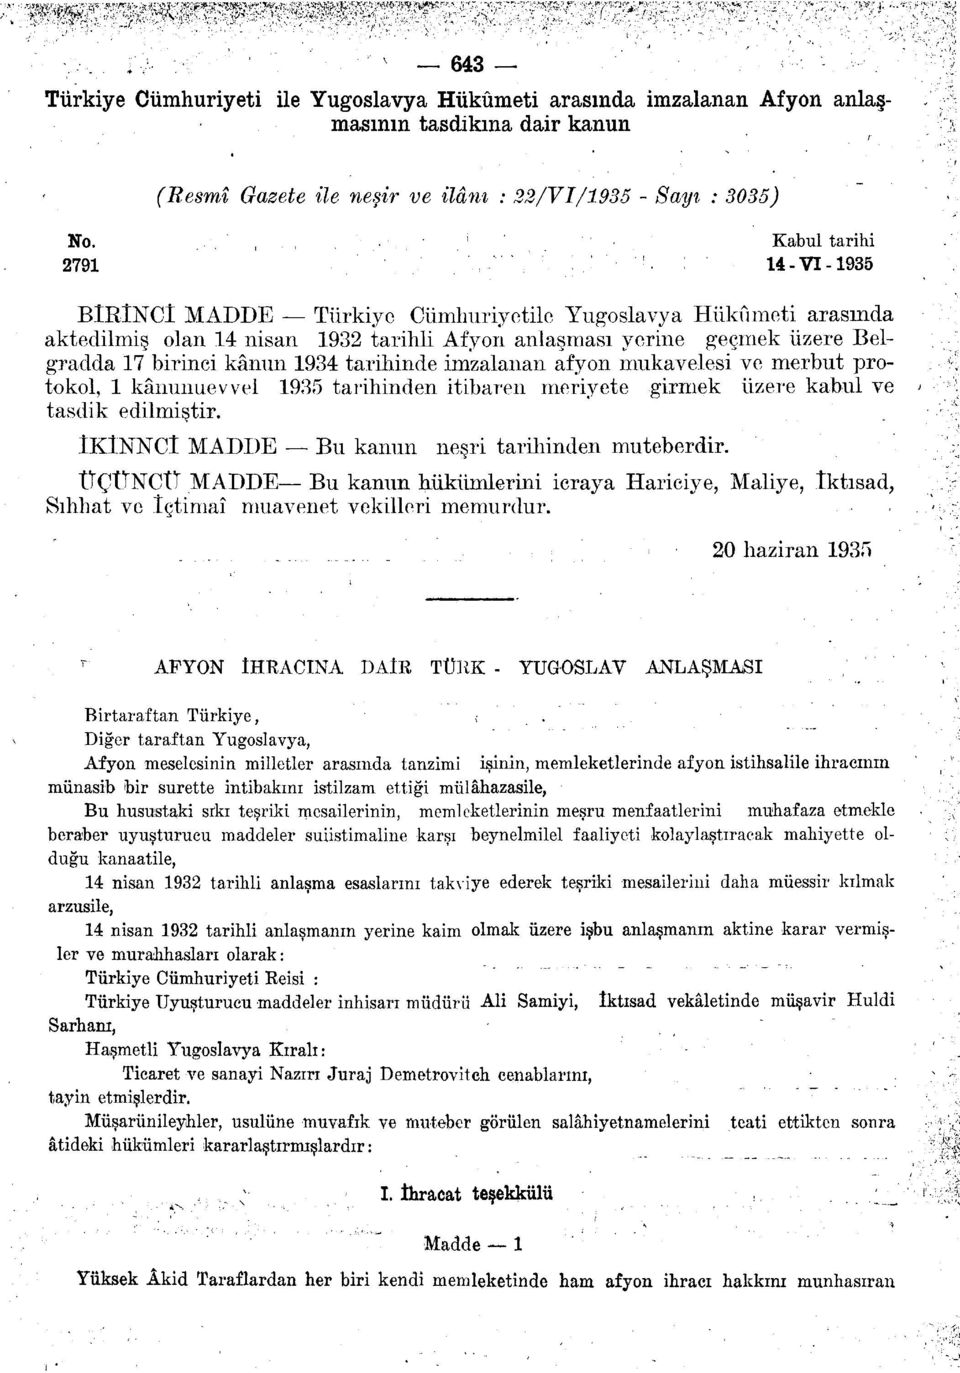 1934 tarihinde imzalanan afyon mukavelesi ve merbut protokol, 1 kânunuevvel 1935 tarihinden itibaren meriyete girmek üzere kabul ve tasdik edilmiştir.